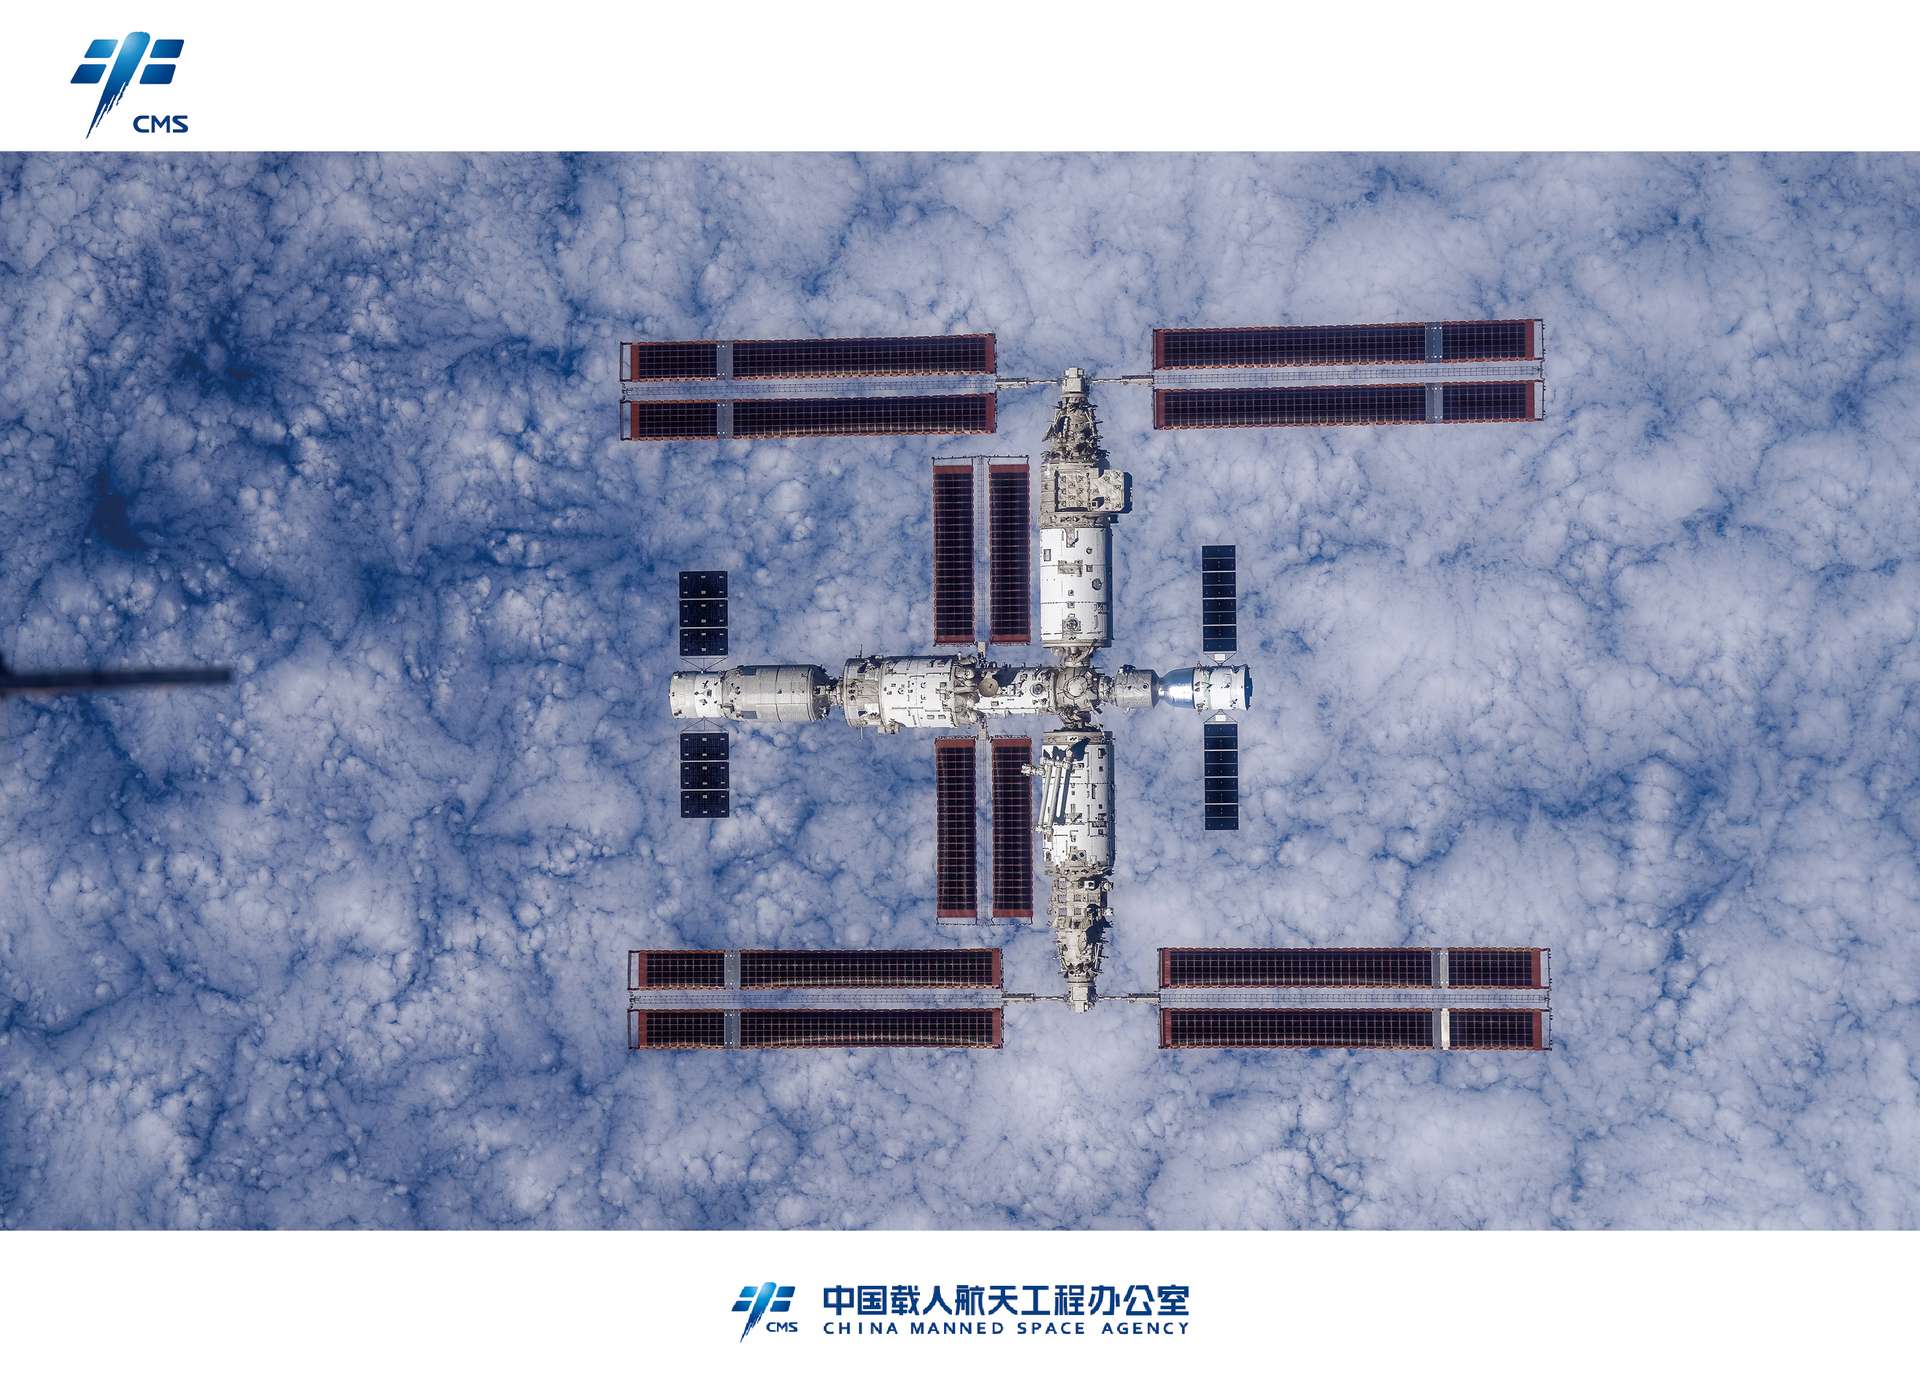 Chiny ujawniają niesamowite zdjęcia swojej stacji kosmicznej